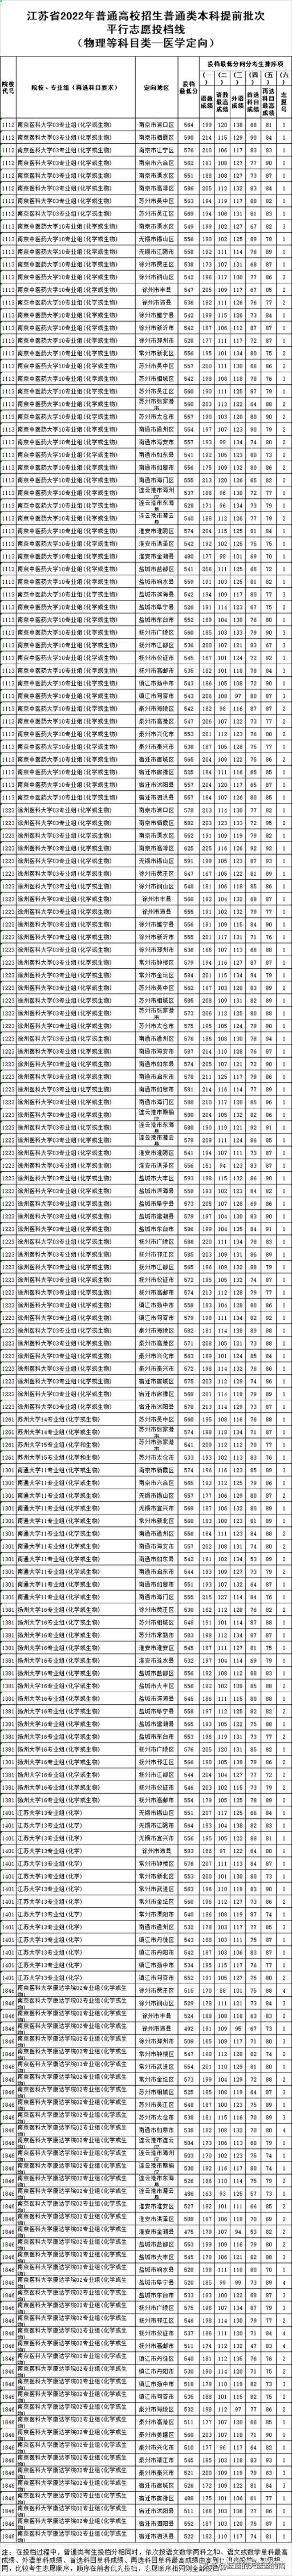 江苏省高考分数线2022排名表(江苏省2021年普通类本科提前批次征求志愿投档线)(图10)